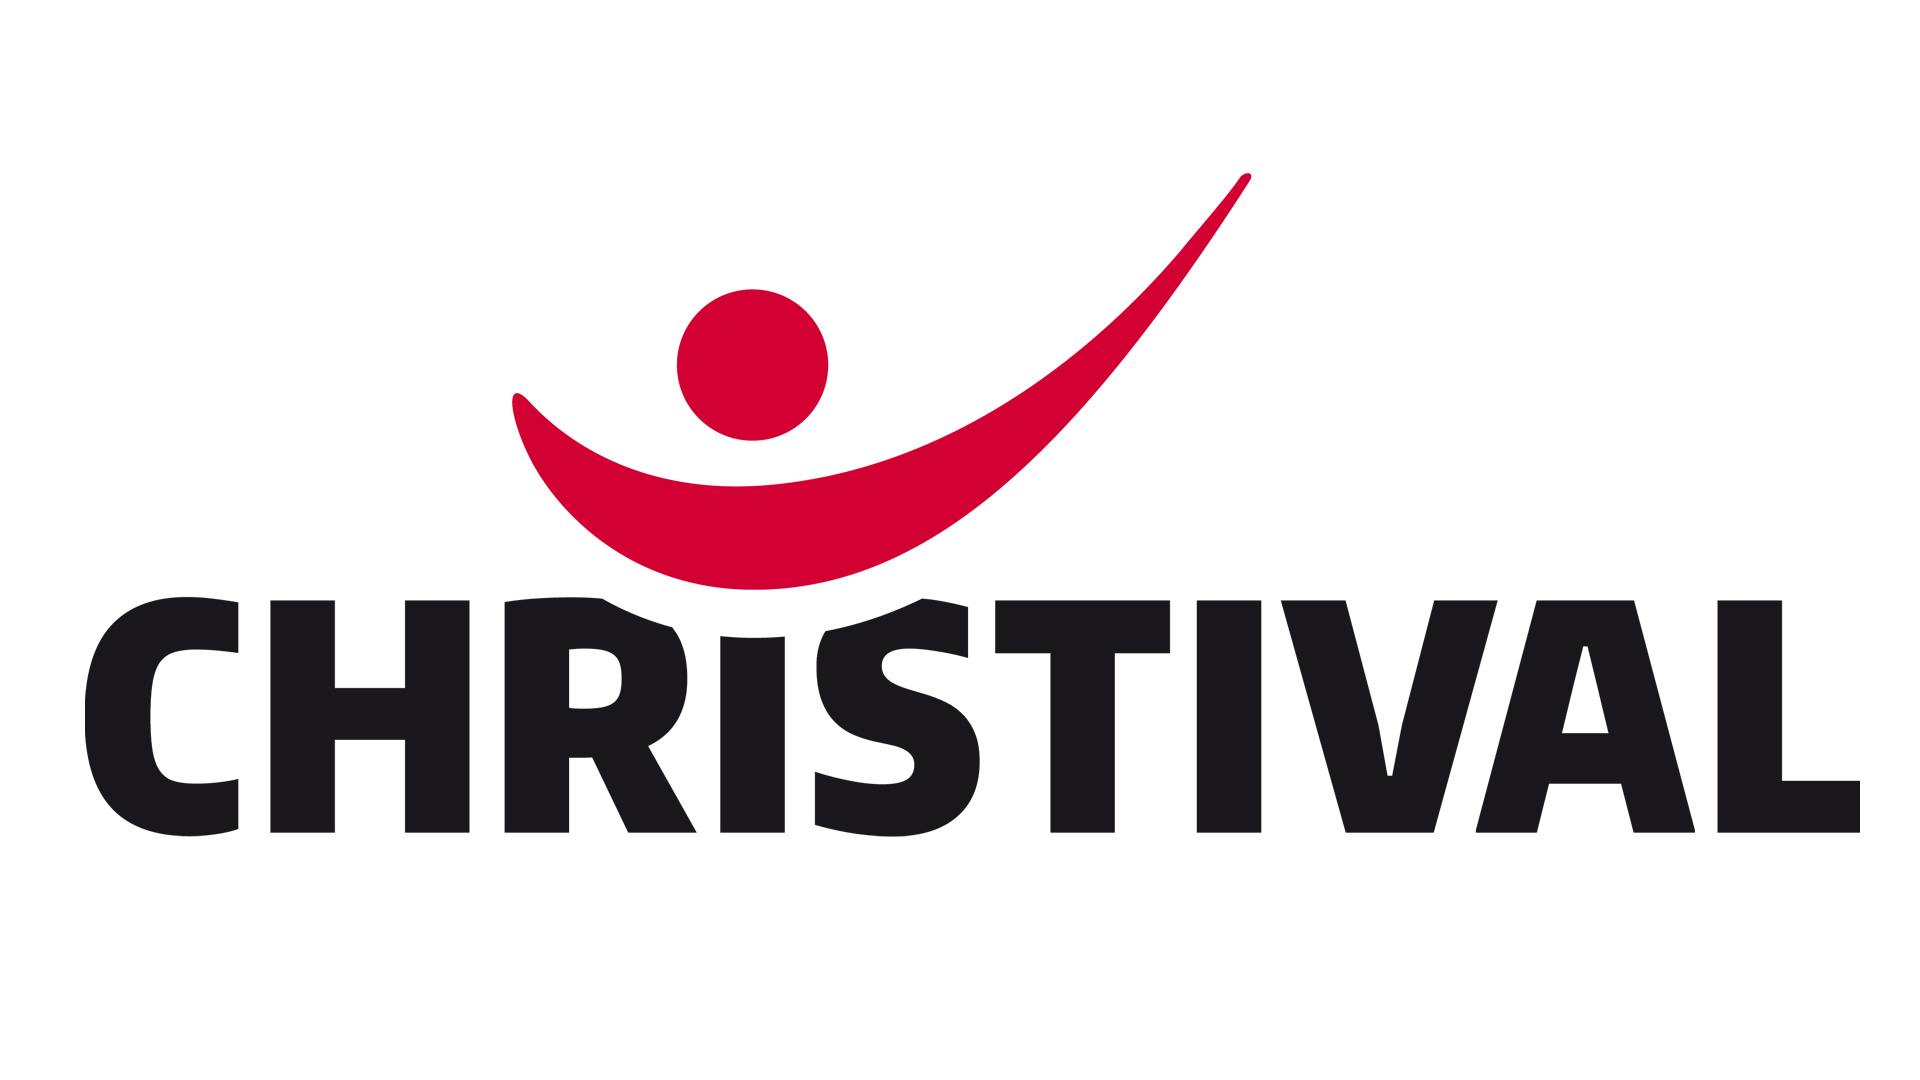 Das Christival 2022 wird vom gemeinnützigen Verein Christival e. V. getragen. Dem Verein gehören mehr als 130 Mitglieder aus christlichen Werken, Verbänden sowie evangelischen Landes- und Freikirchen an.